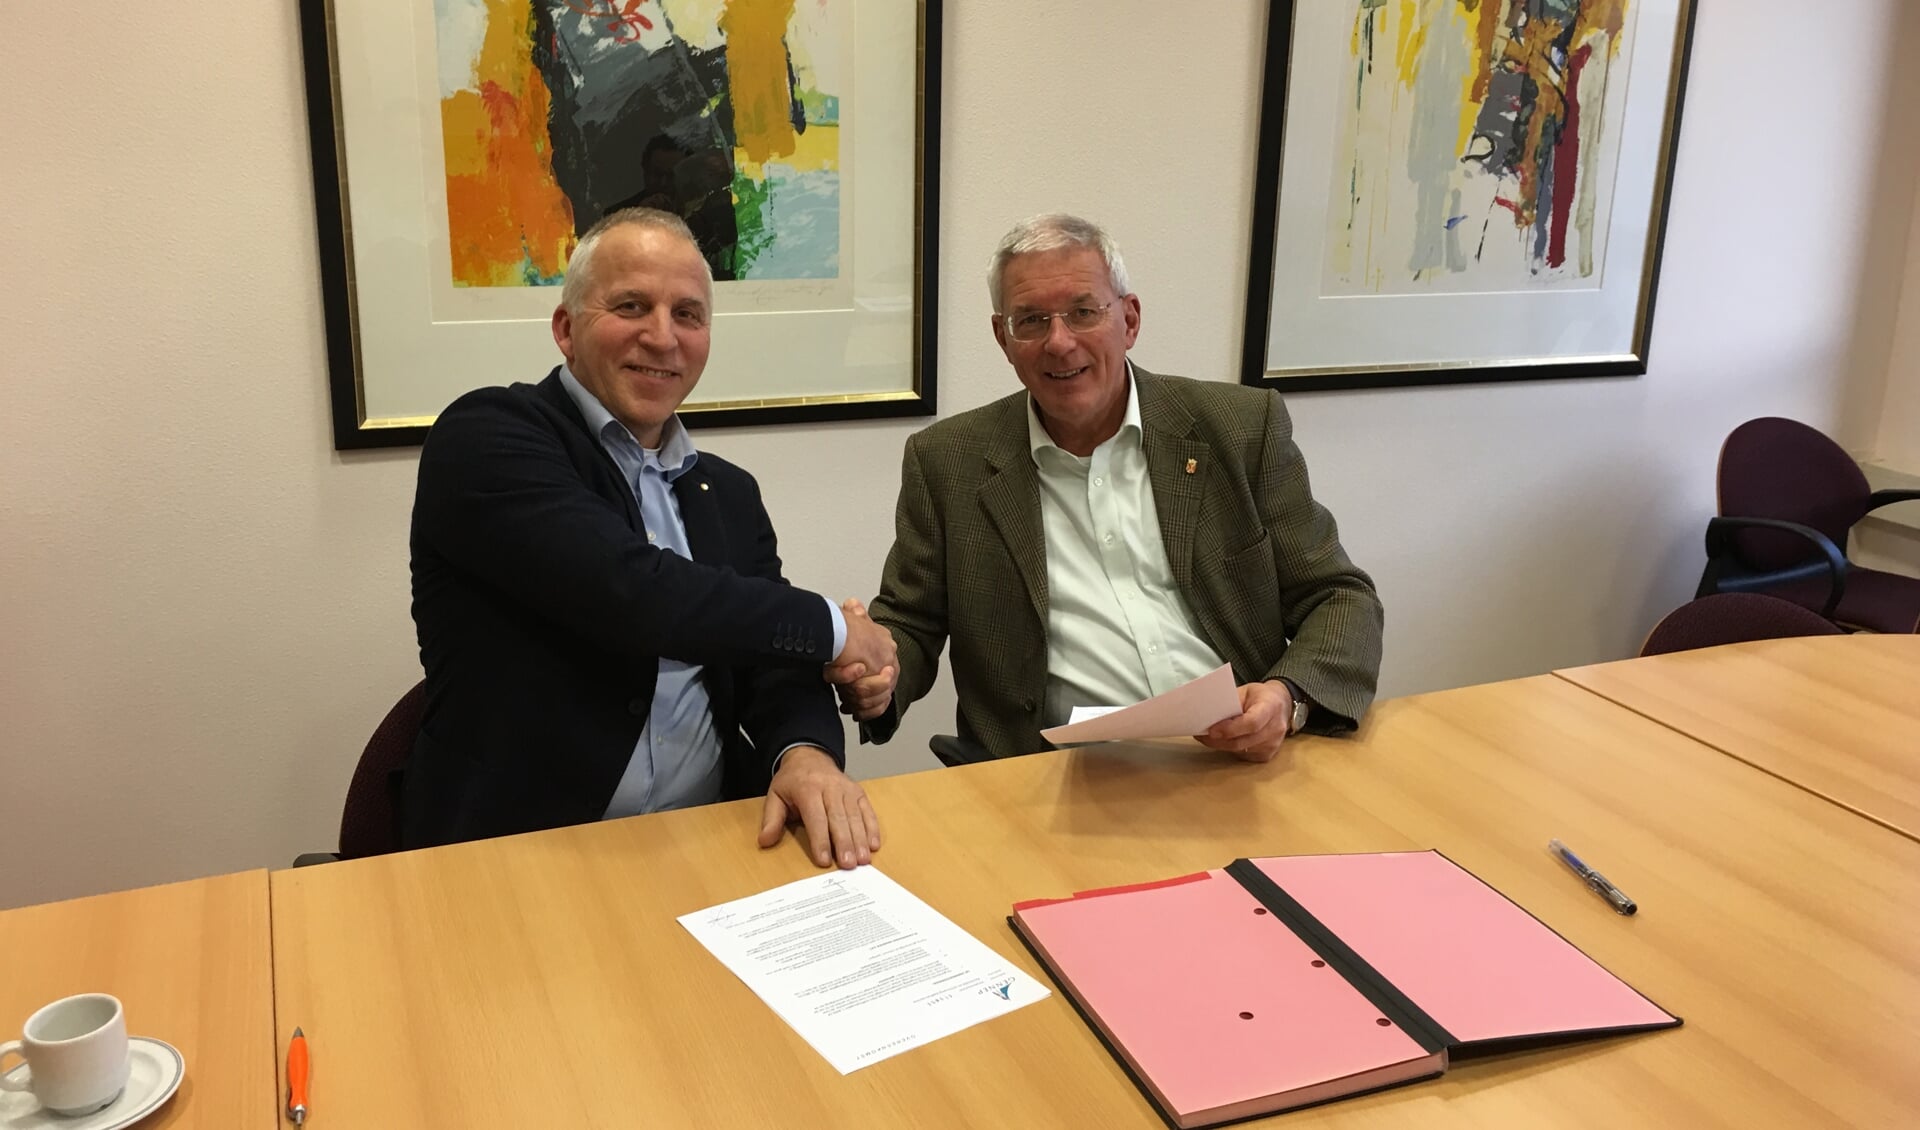 Door burgemeester Peter de Koning en Chris van Kempen, directeur van CVK Bouw, is de aannemingsovereenkomst getekend voor restauratie en verbouwing van het stadhuis aan de Markt in Gennep. 